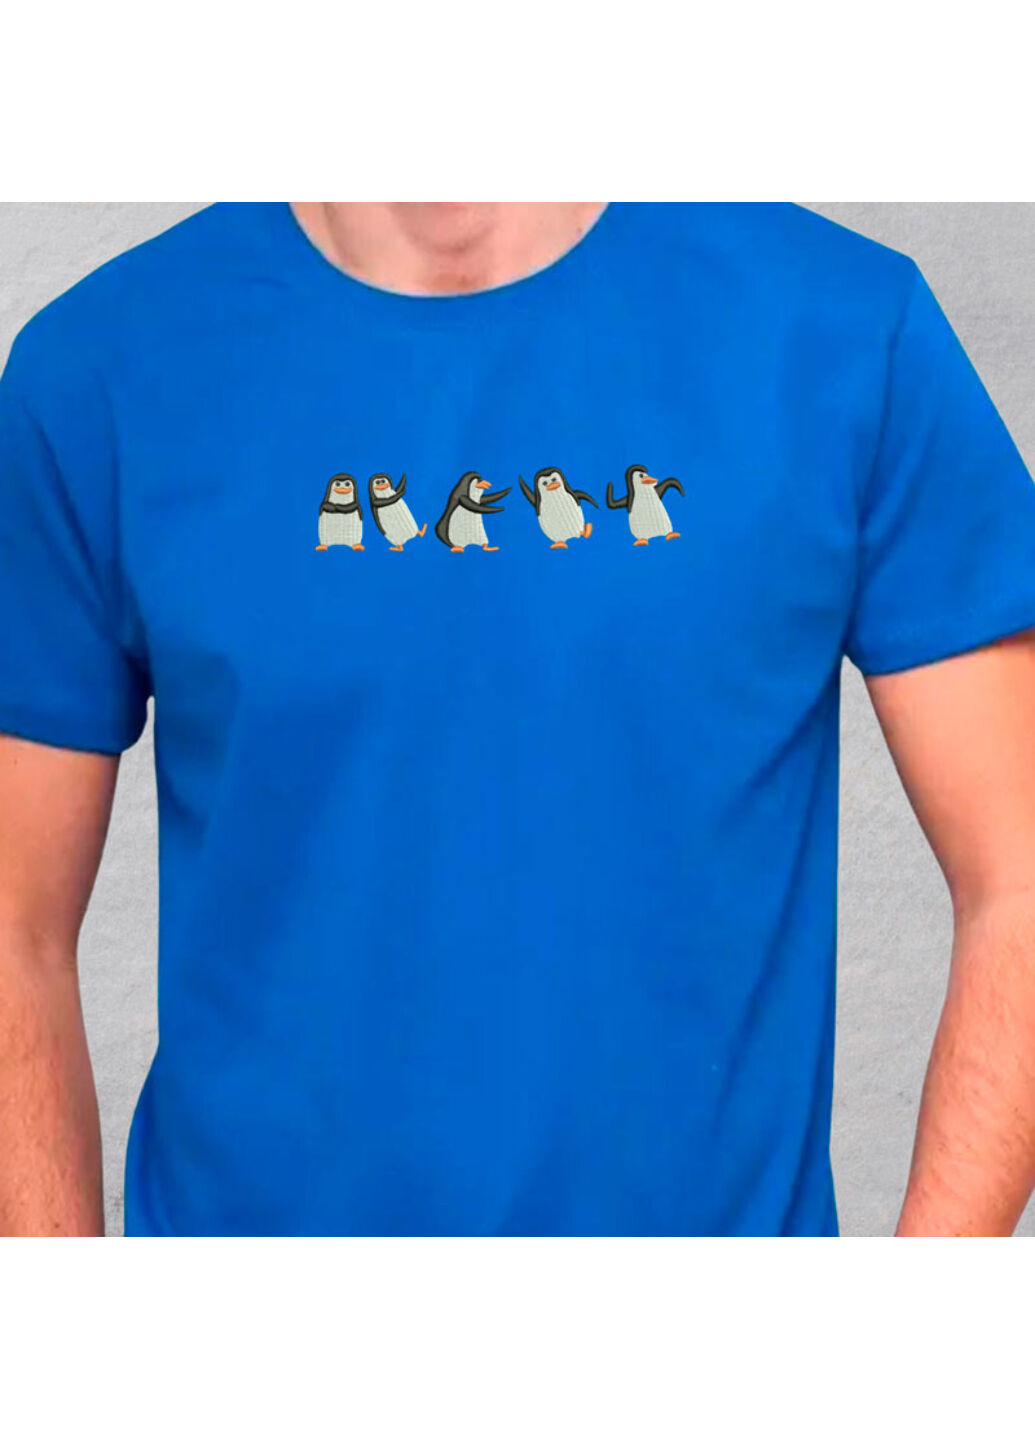 Синя футболка з вишивкою пінгвінів 01-3 чоловіча синій xl No Brand